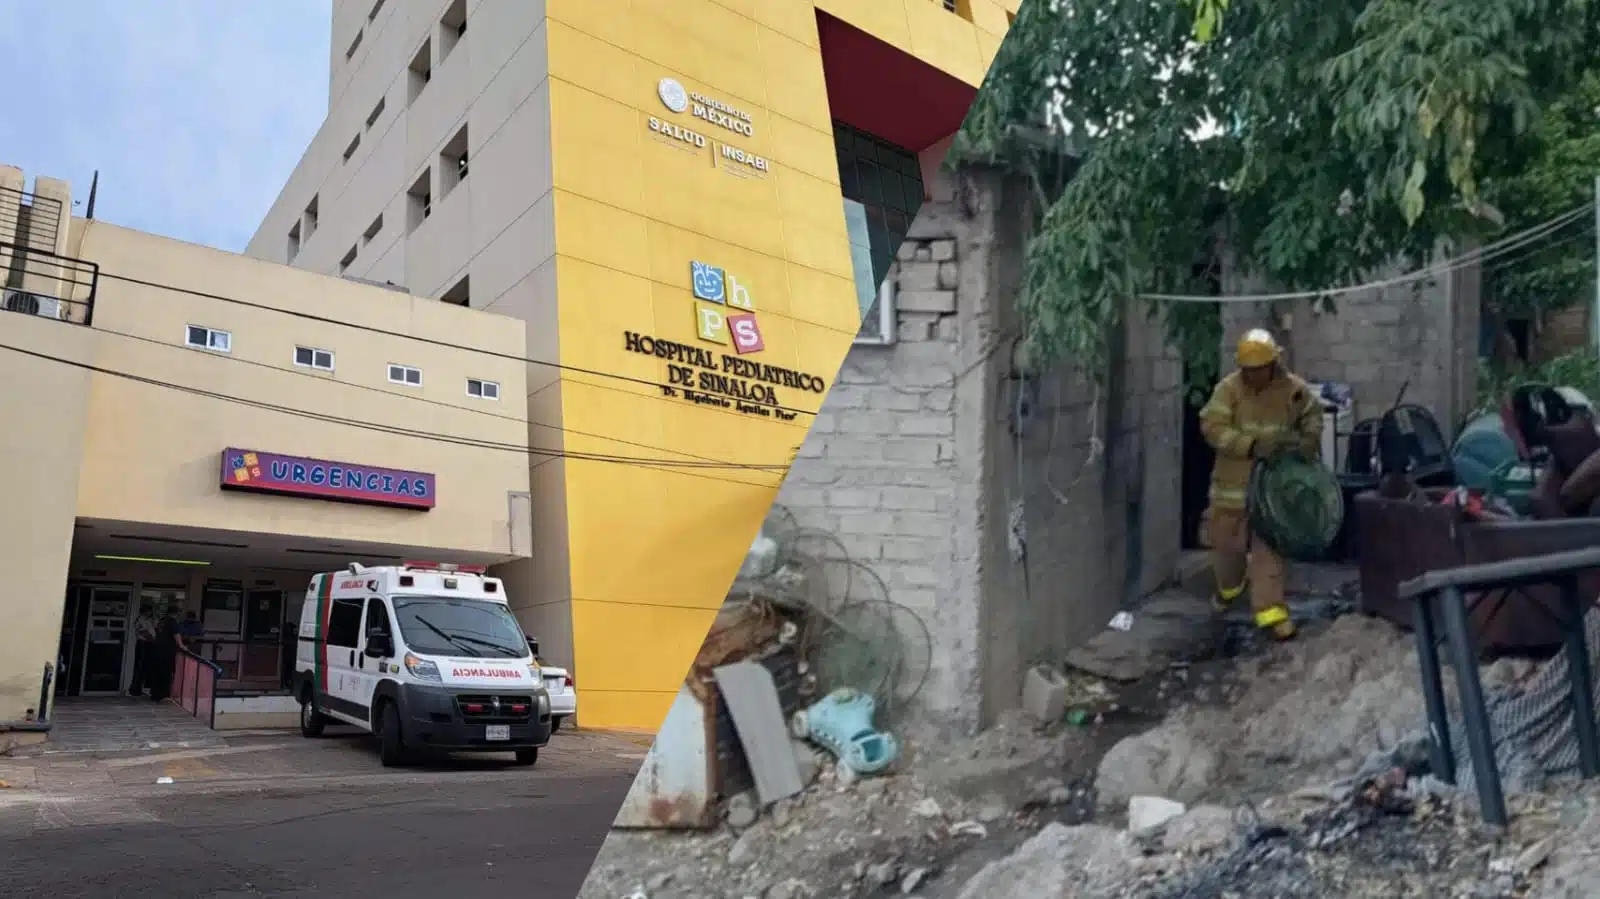 Menor que sufrió quemaduras en incendio será trasladado al Hospital Pediátrico de Culiacán